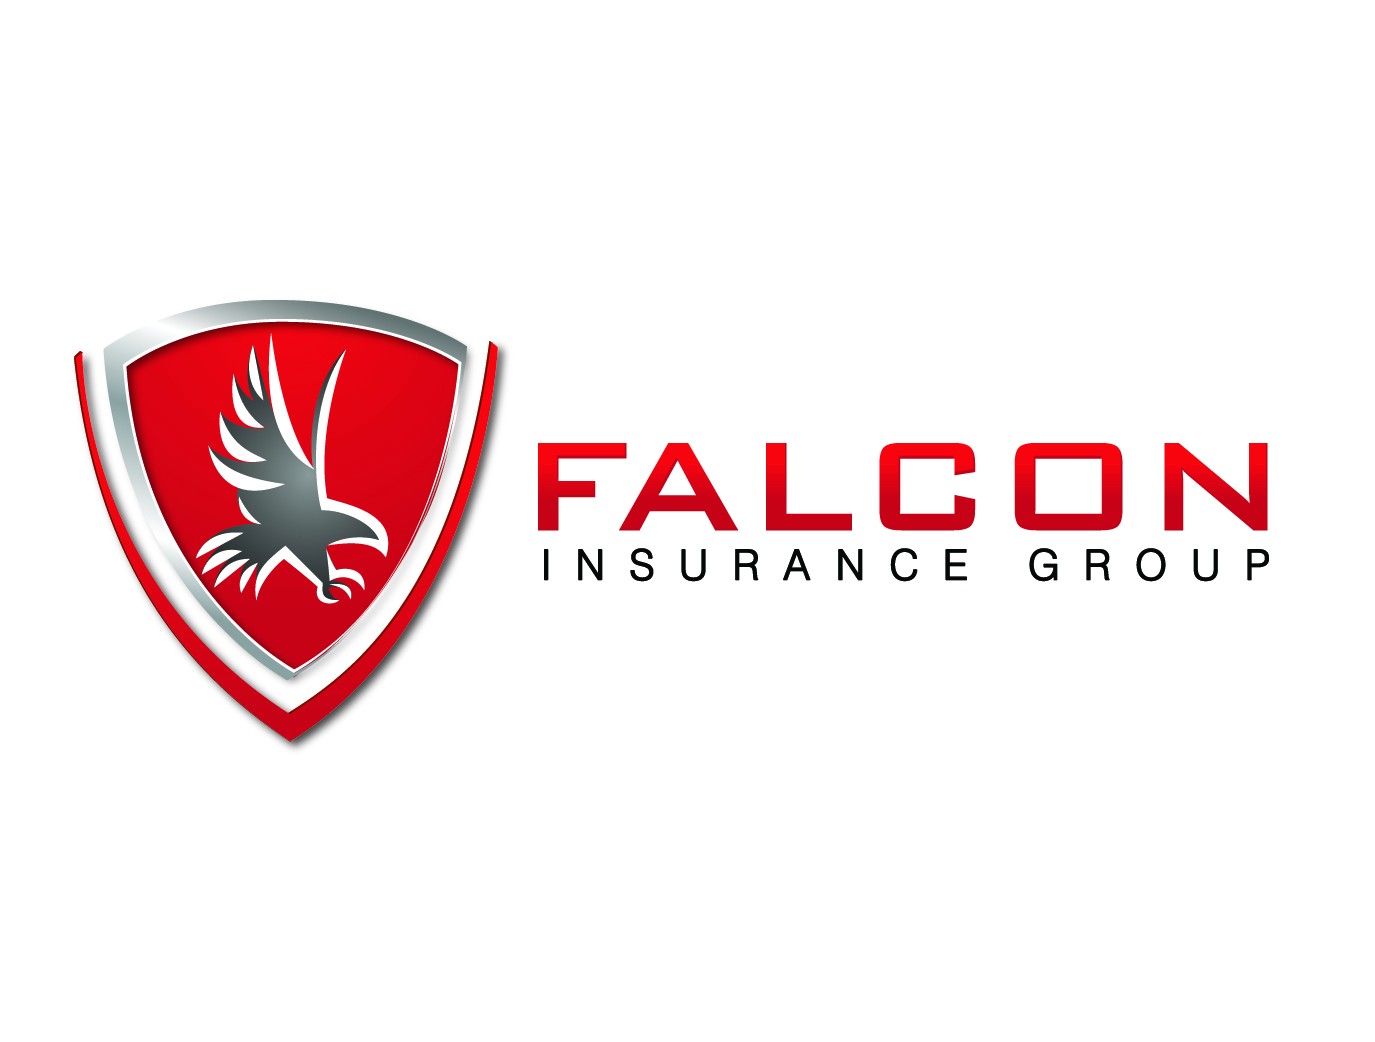 Falcon Insurance Company